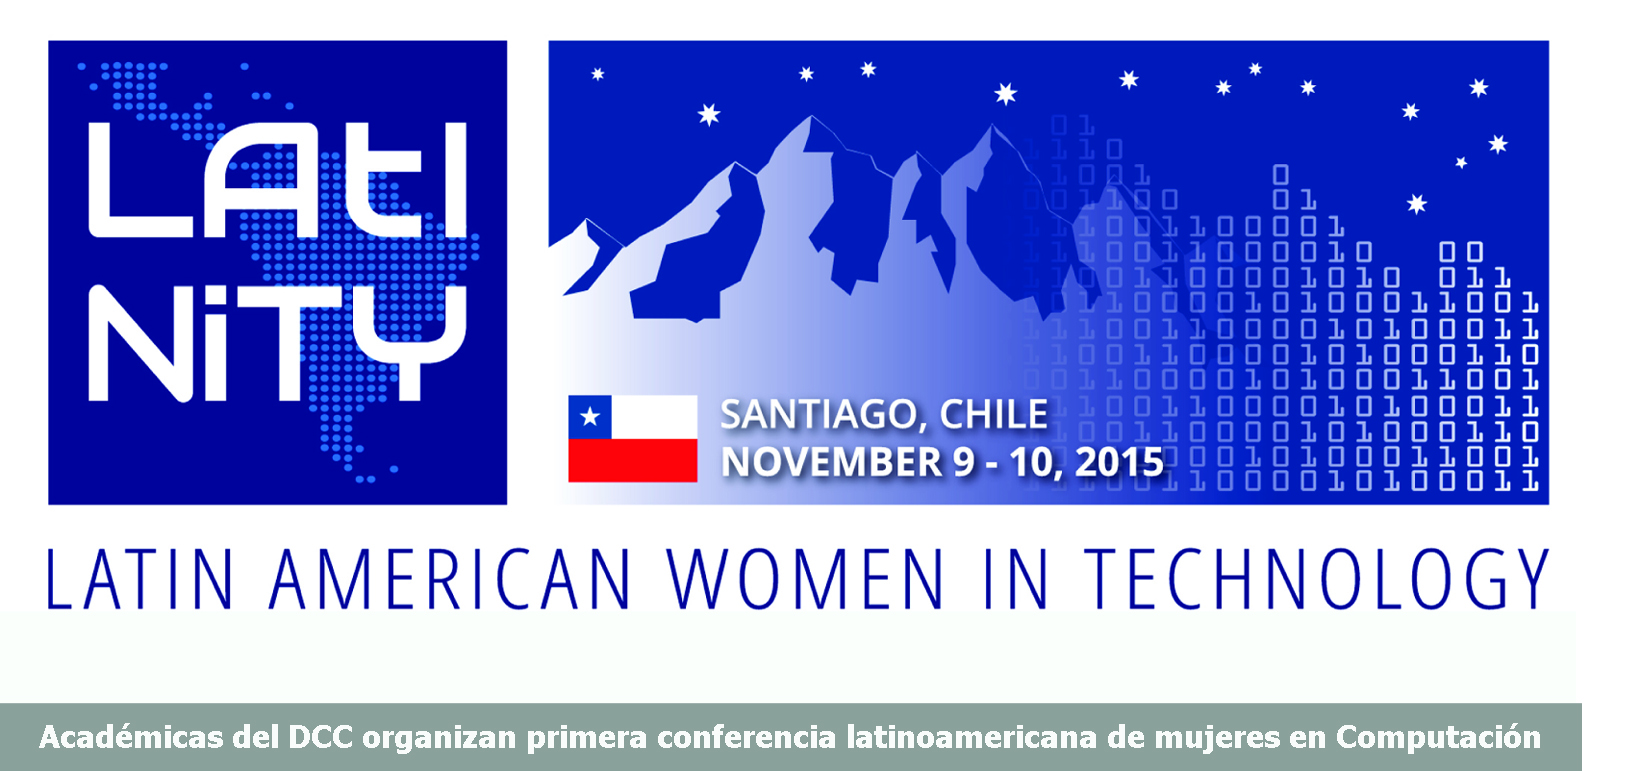 Académicas del DCC organizan primera conferencia latinoamericana de mujeres en Computación